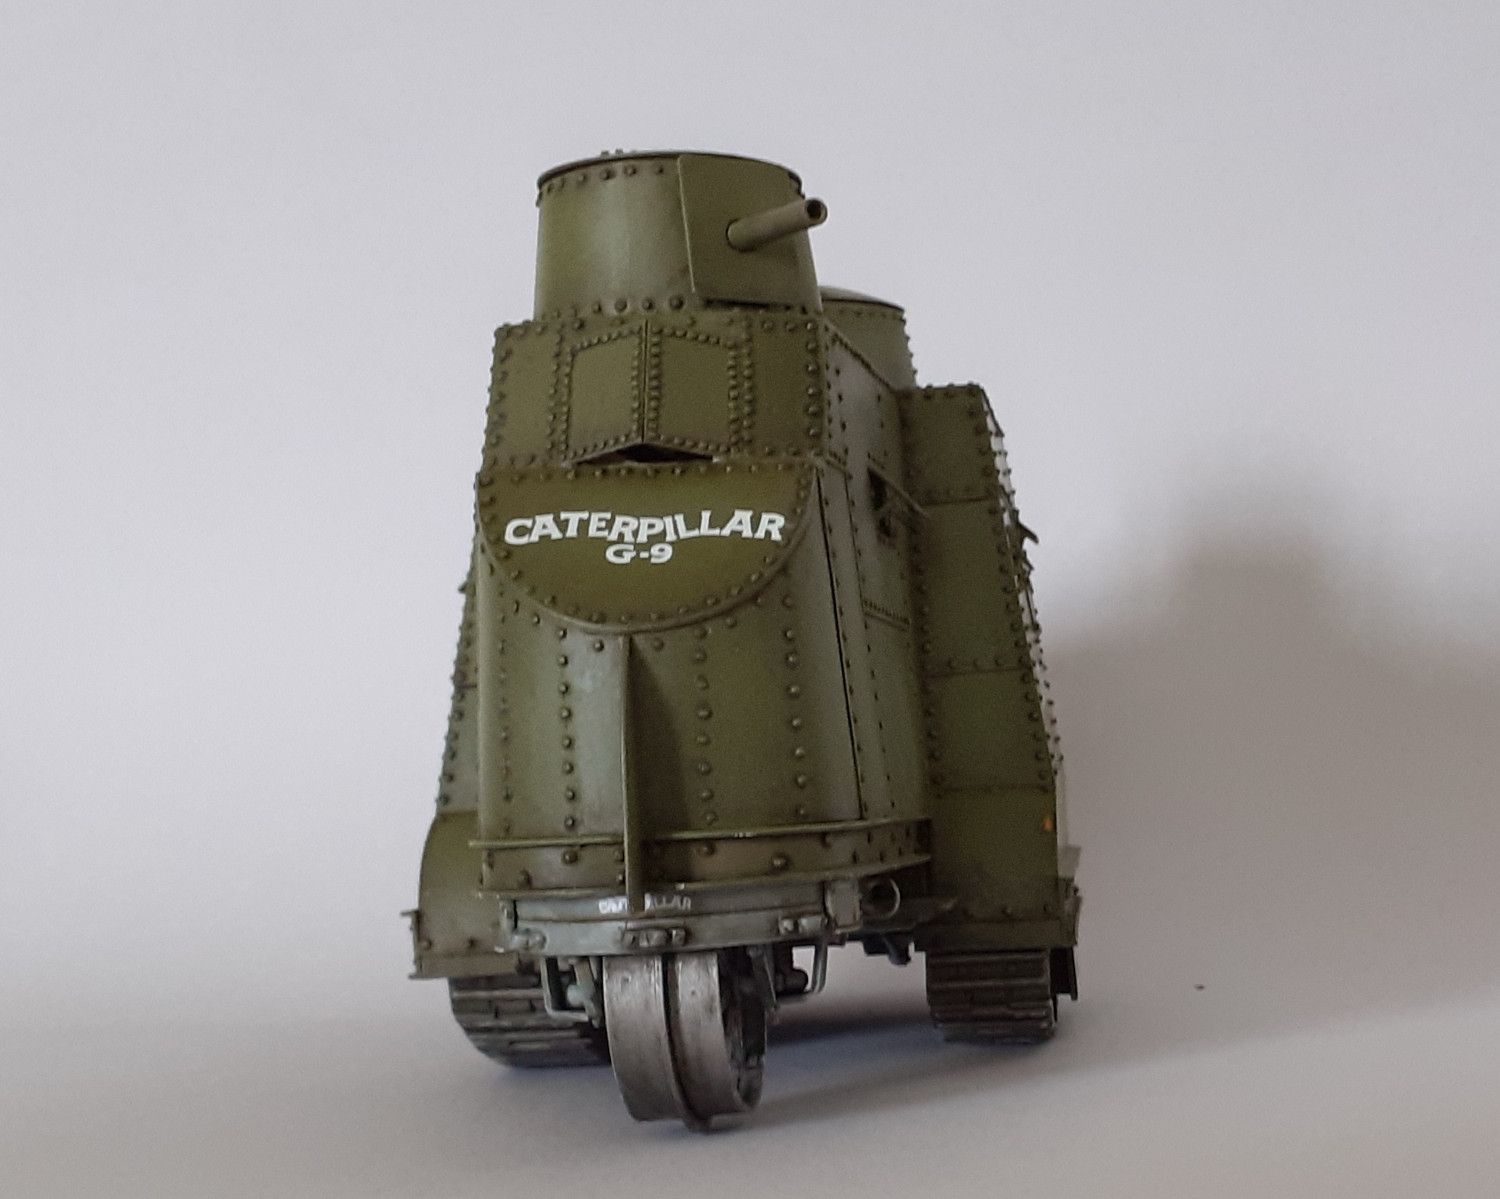 Caterpillar G9 : 1er tank US de l'Histoire [base tracteur Holt Roden + scratch] de Lostiznaos 663e8c9462a89